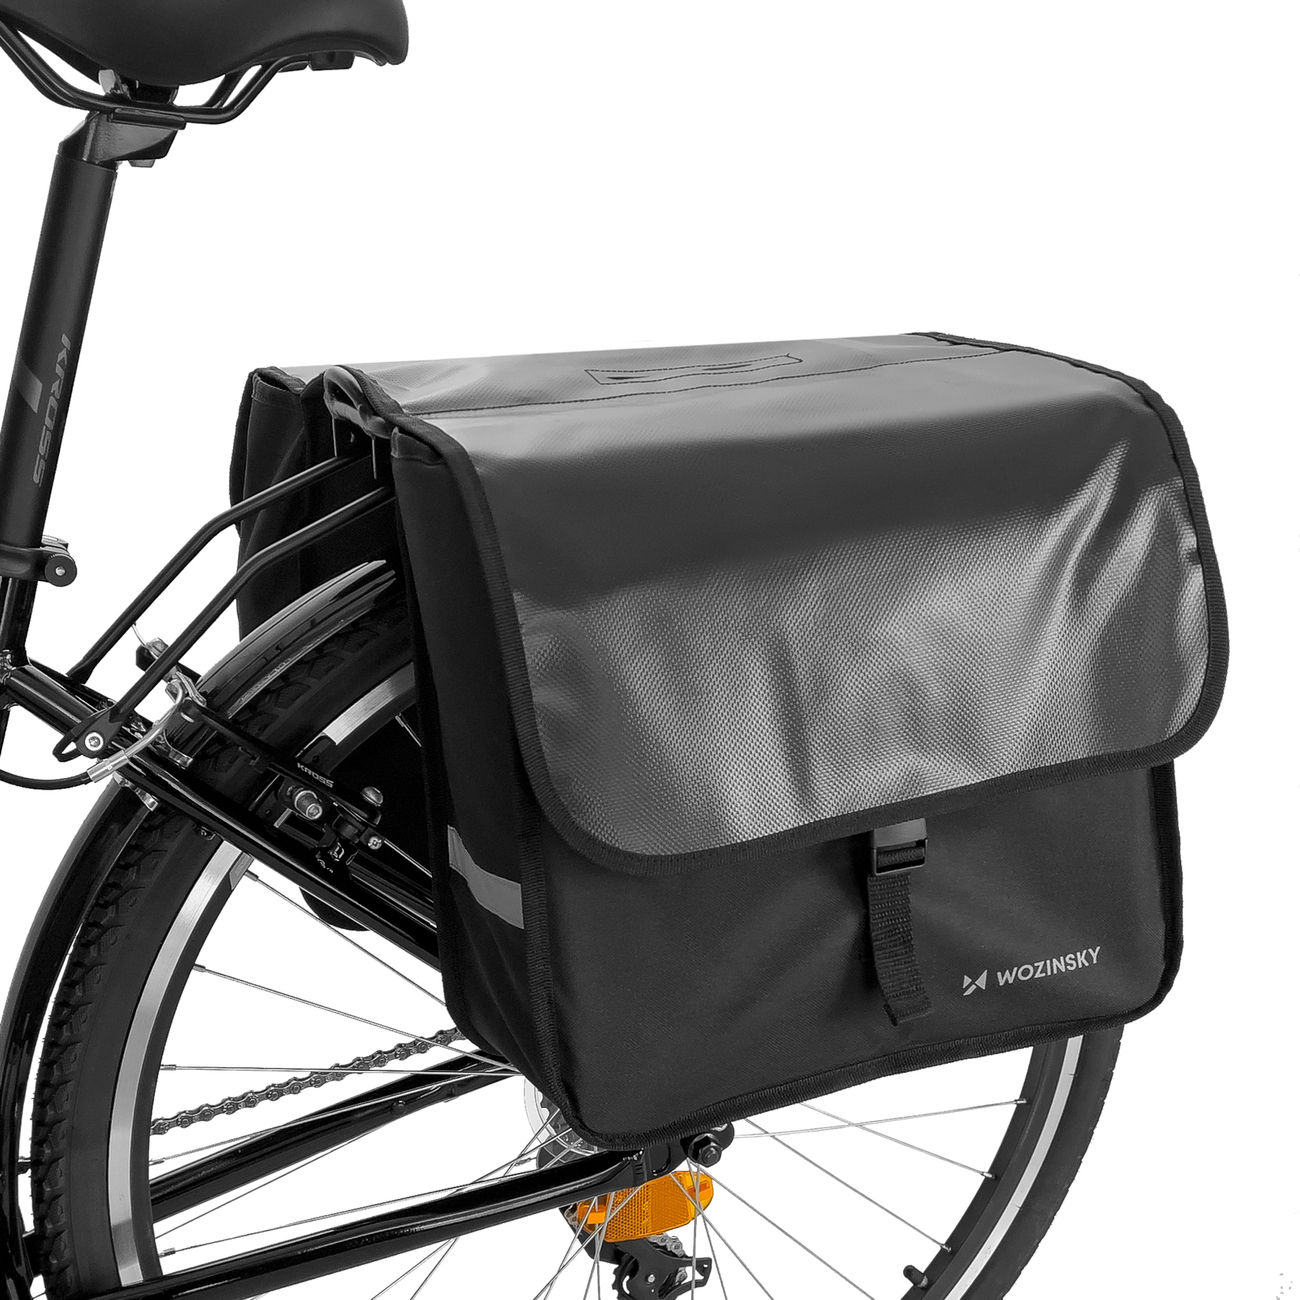 Wozinsky biciklis/kerékpáros táska 28L fekete (WBB34BK)